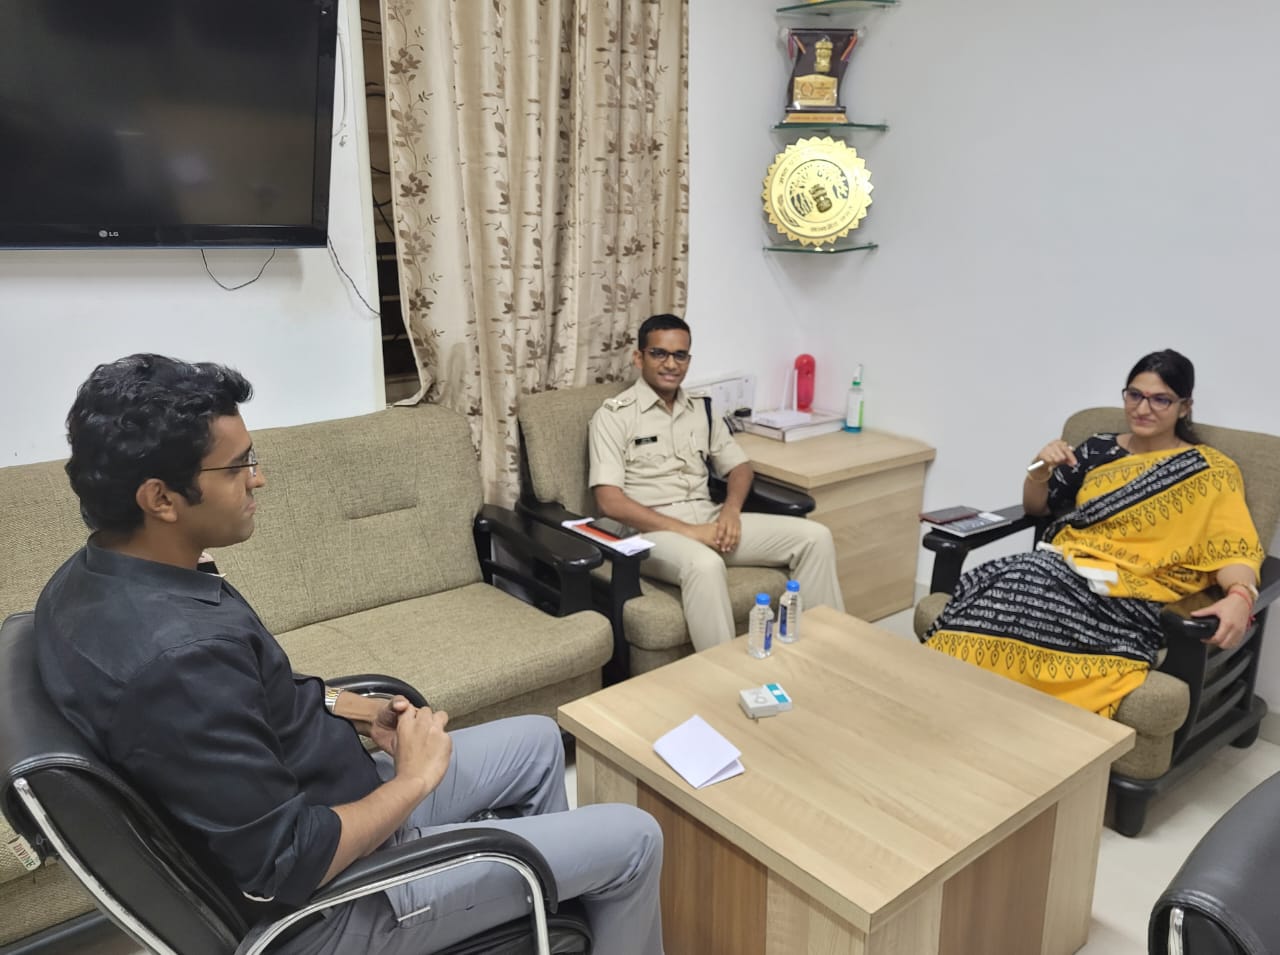 नवागत पुलिस कप्तान श्री अगम जैन ने ग्रहण किया पदभार | New India Times